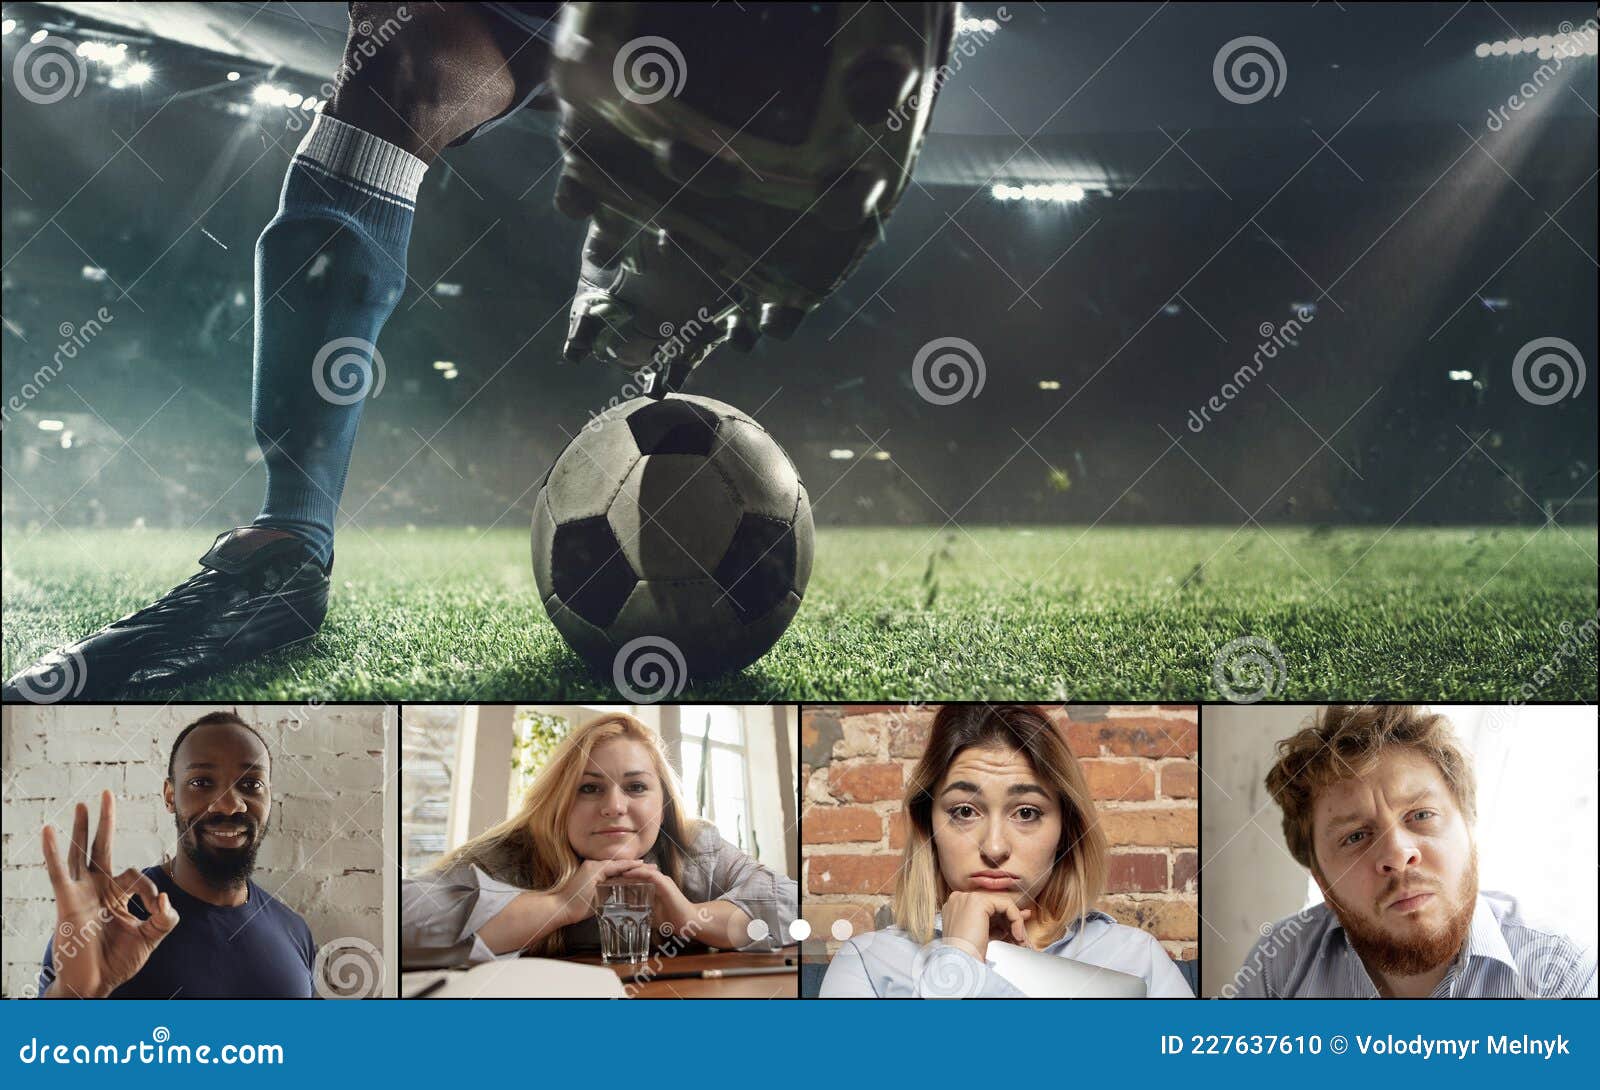 Imagem Composta De Colagem. Grupo De Jovens Assistindo Jogos De Futebol  Online Usando Aplicação De Vídeo. Ecrã Do Computador Portá Foto de Stock -  Imagem de atendimento, tela: 227637488